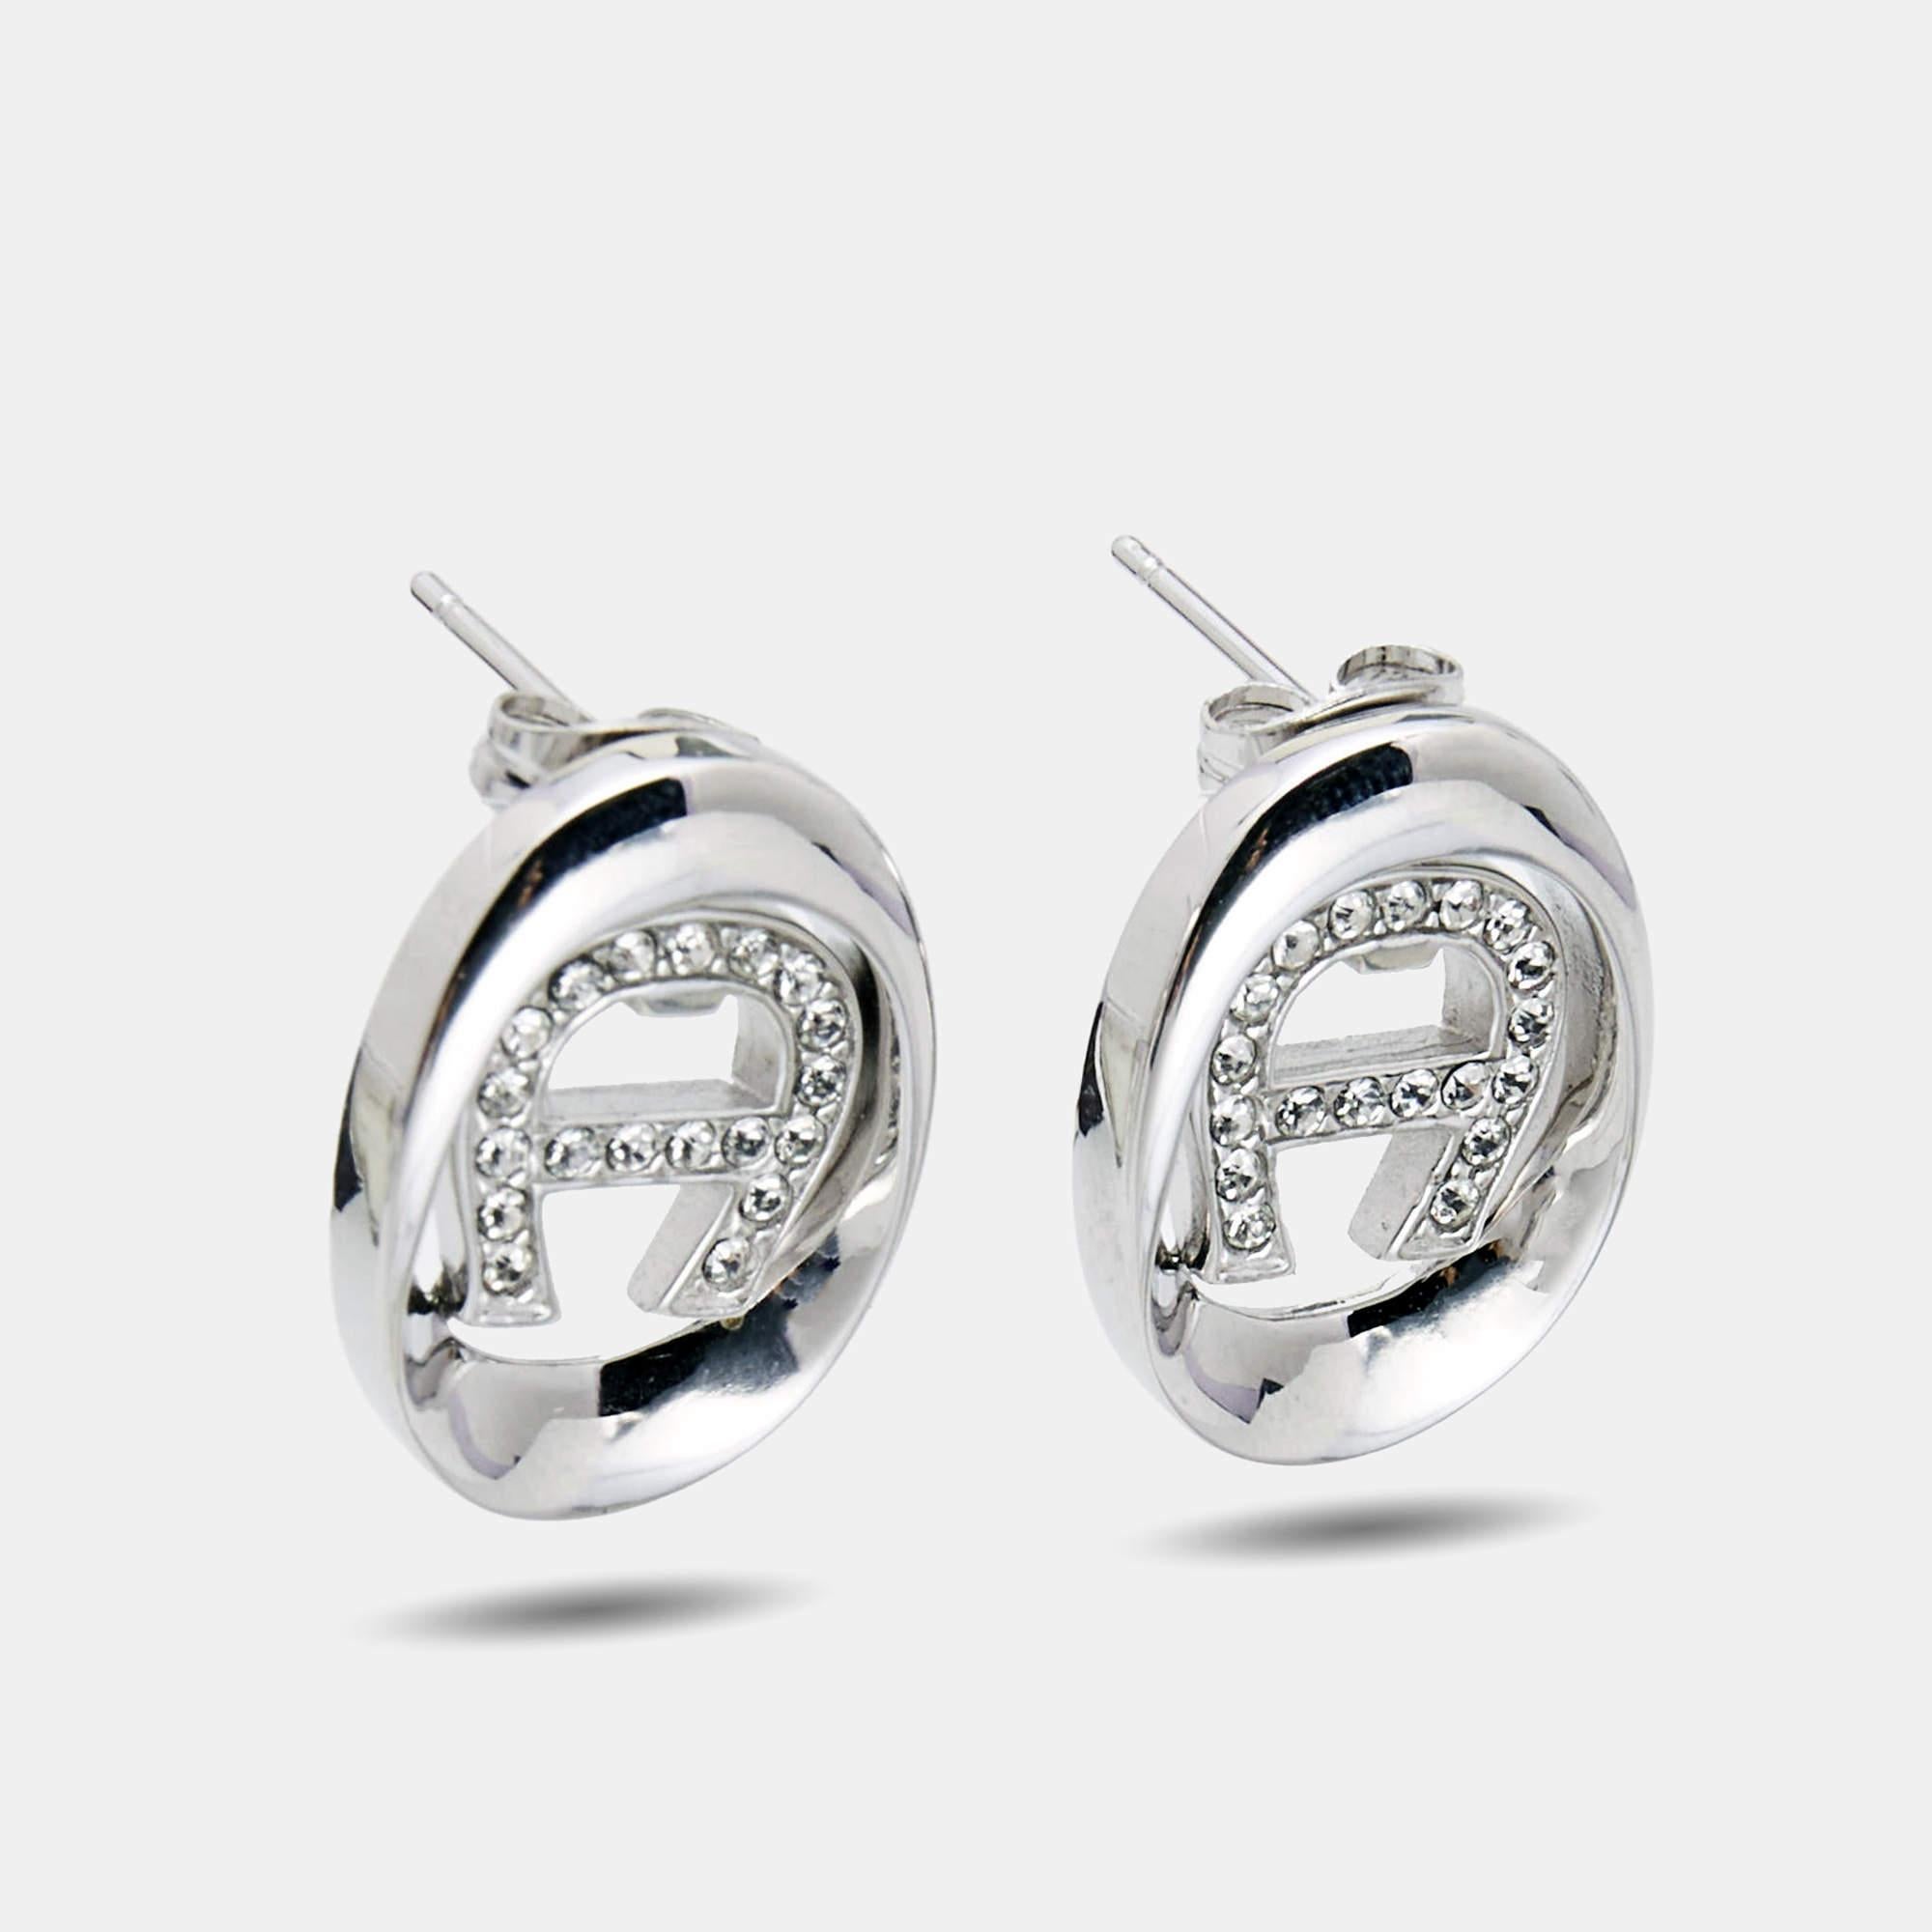 Dieses schlichte und elegante Paar Ohrringe von Aigner zeigt das Markenlogo in silberfarbenem Metall mit Kristallen. Das Paar verleiht jeder schicken Garderobe einen gewissen Charme.

Enthält: Original-Box, Original-Etui

